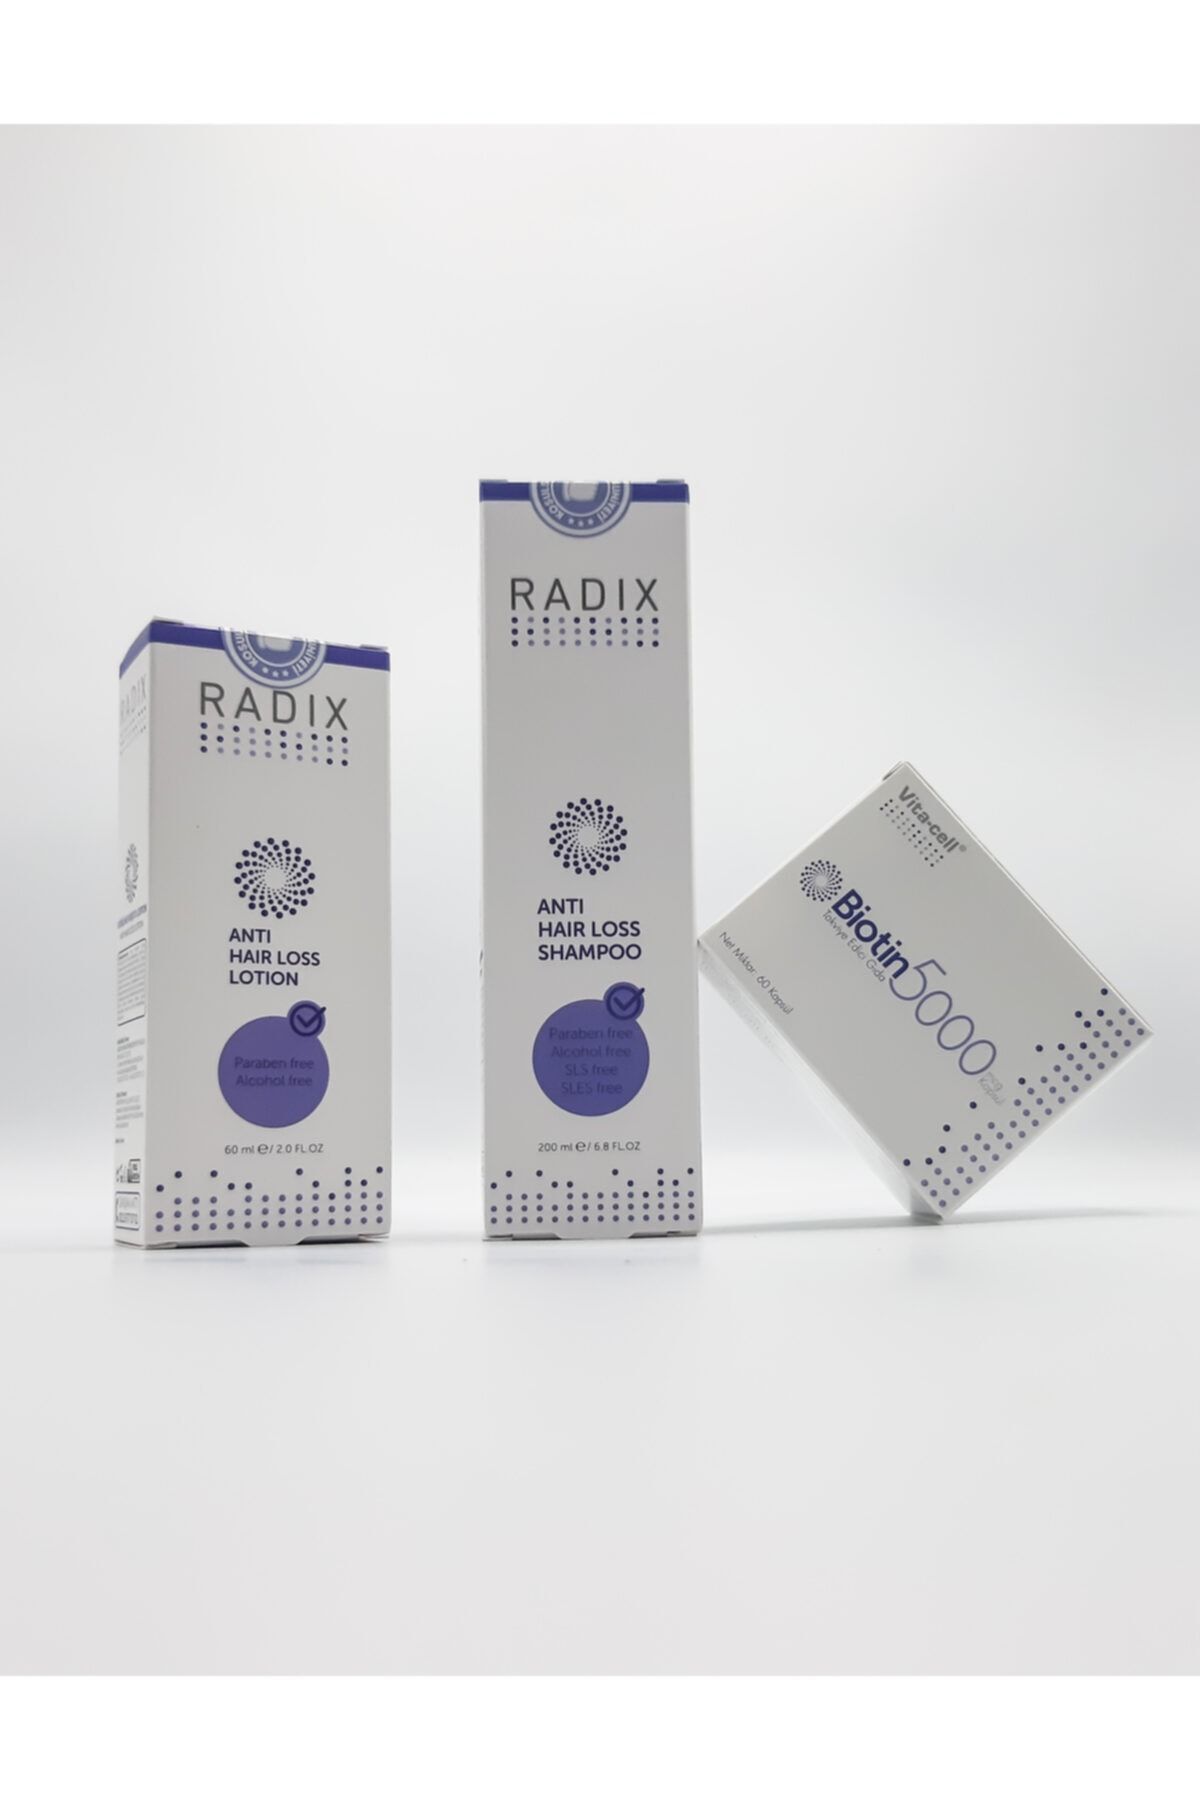 Radix Saç Dökülme Önleyici Set - Şampuan, Losyon 5% Procapil, Biotin 5000mcg